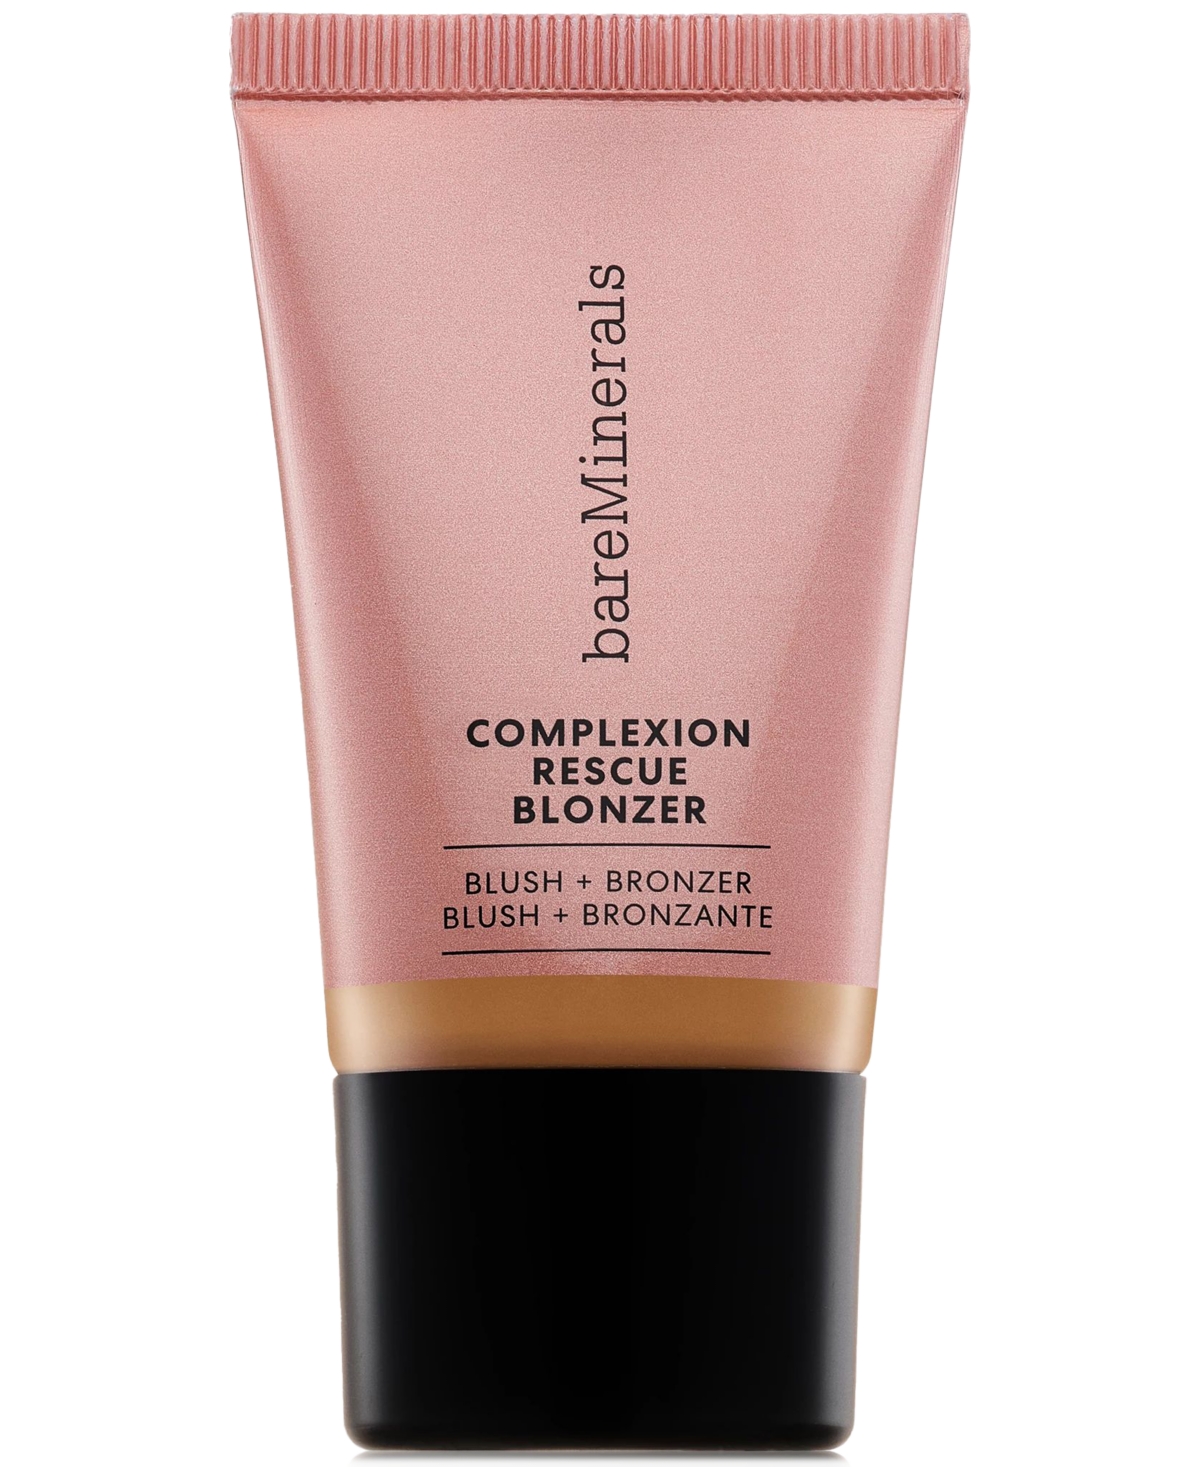 Complexion Rescue Liquid Blonzer Blush + Bronzer, 0.5 oz. - Kiss Spice